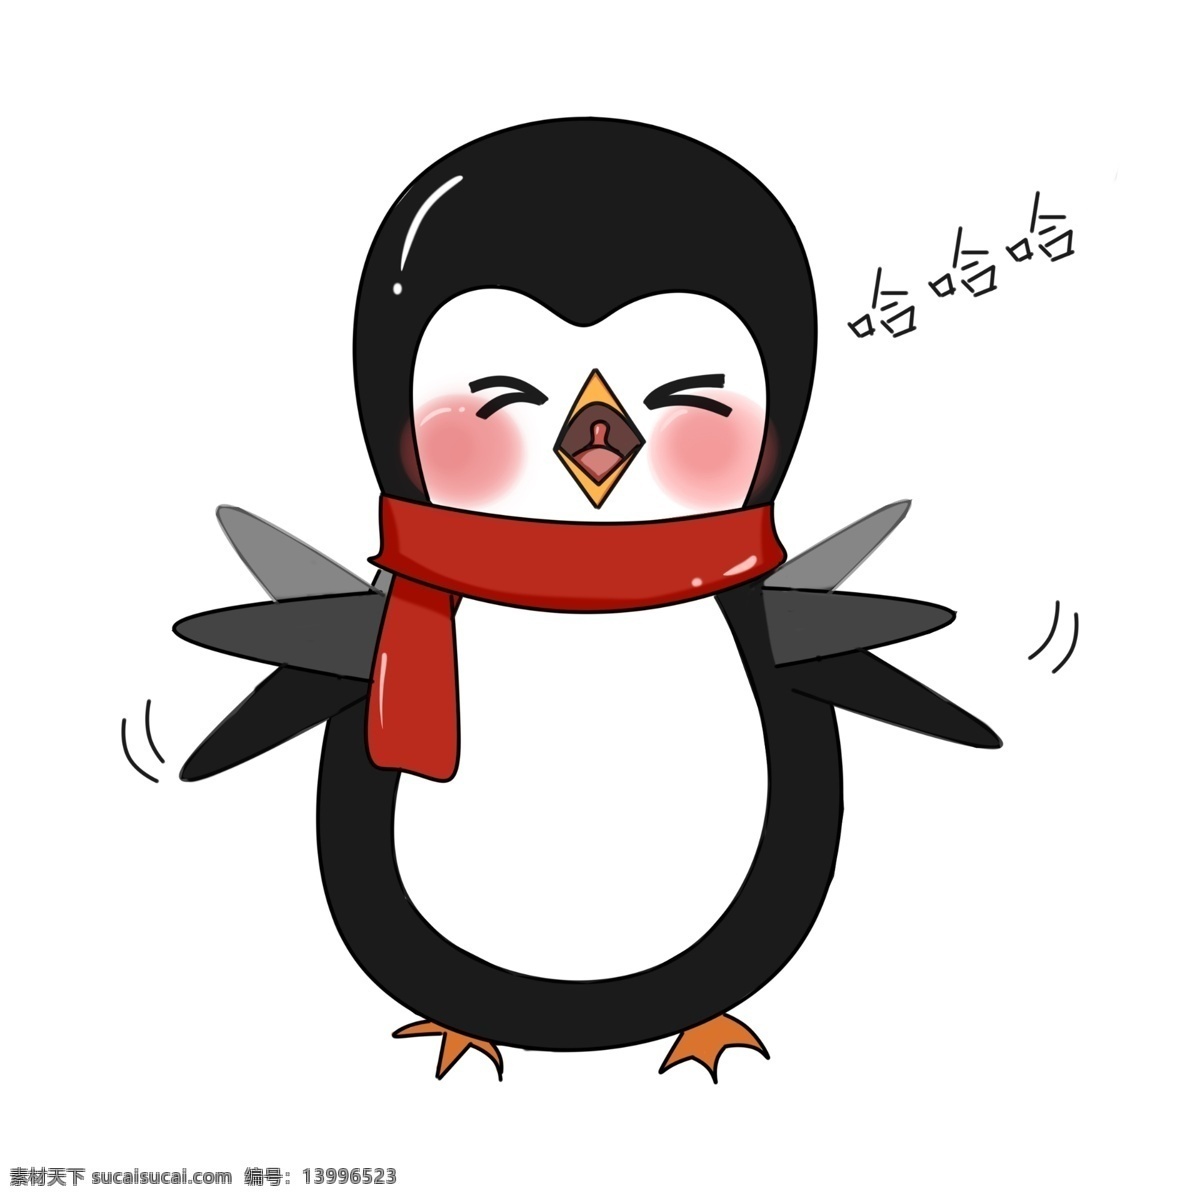 哈哈大笑 企鹅 插画 可爱的企鹅 企鹅大笑 哈哈哈 大声笑的企鹅 开心的企鹅